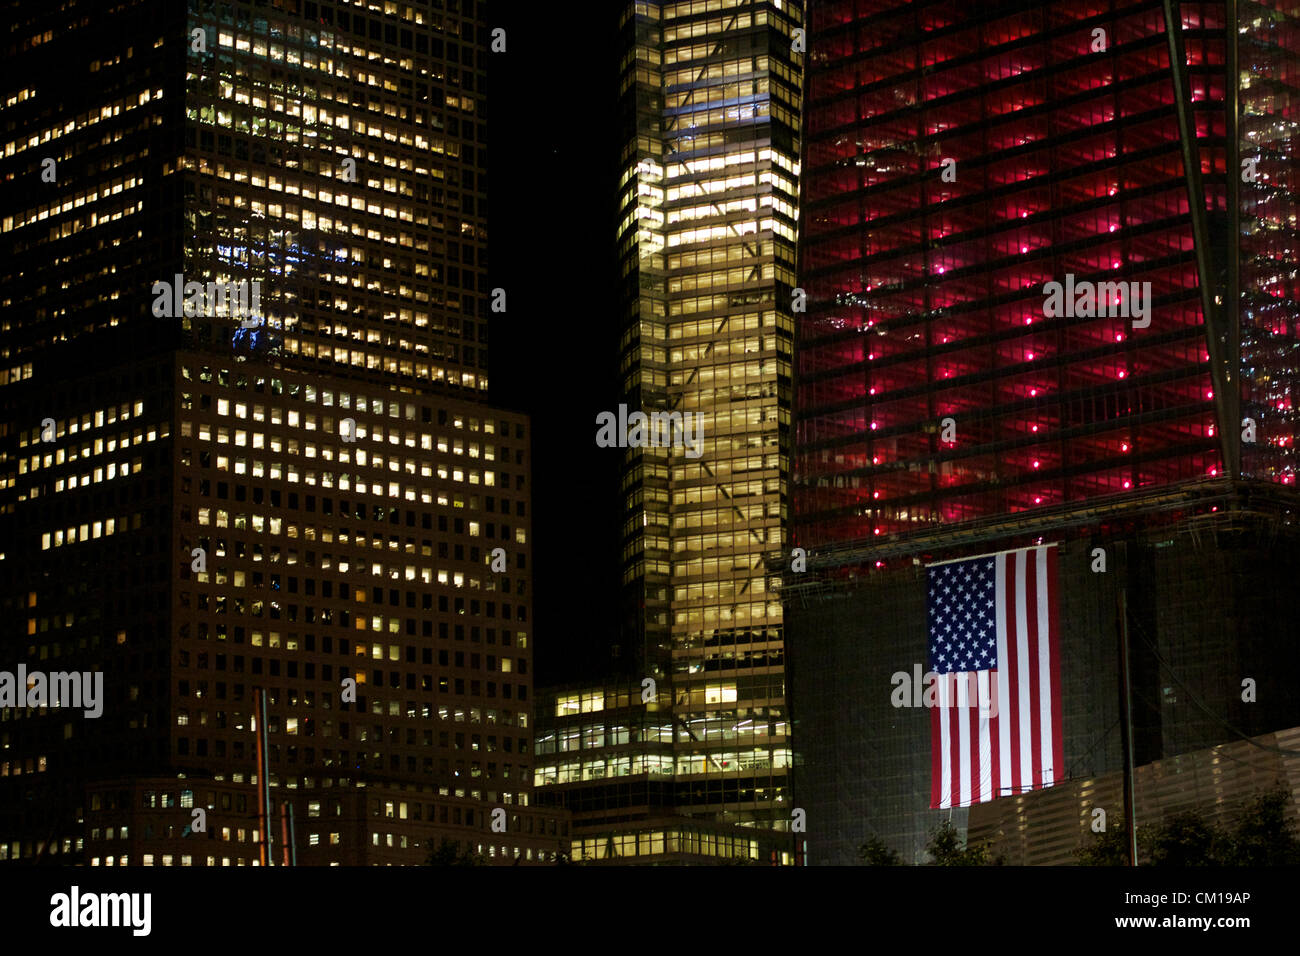 New York, NY - 11 Settembre 2012: il World Trade Center sito in costruzione come è acceso in rosso, bianco e blu nella memoria del 9/11 attacchi 11 anni prima. Foto Stock